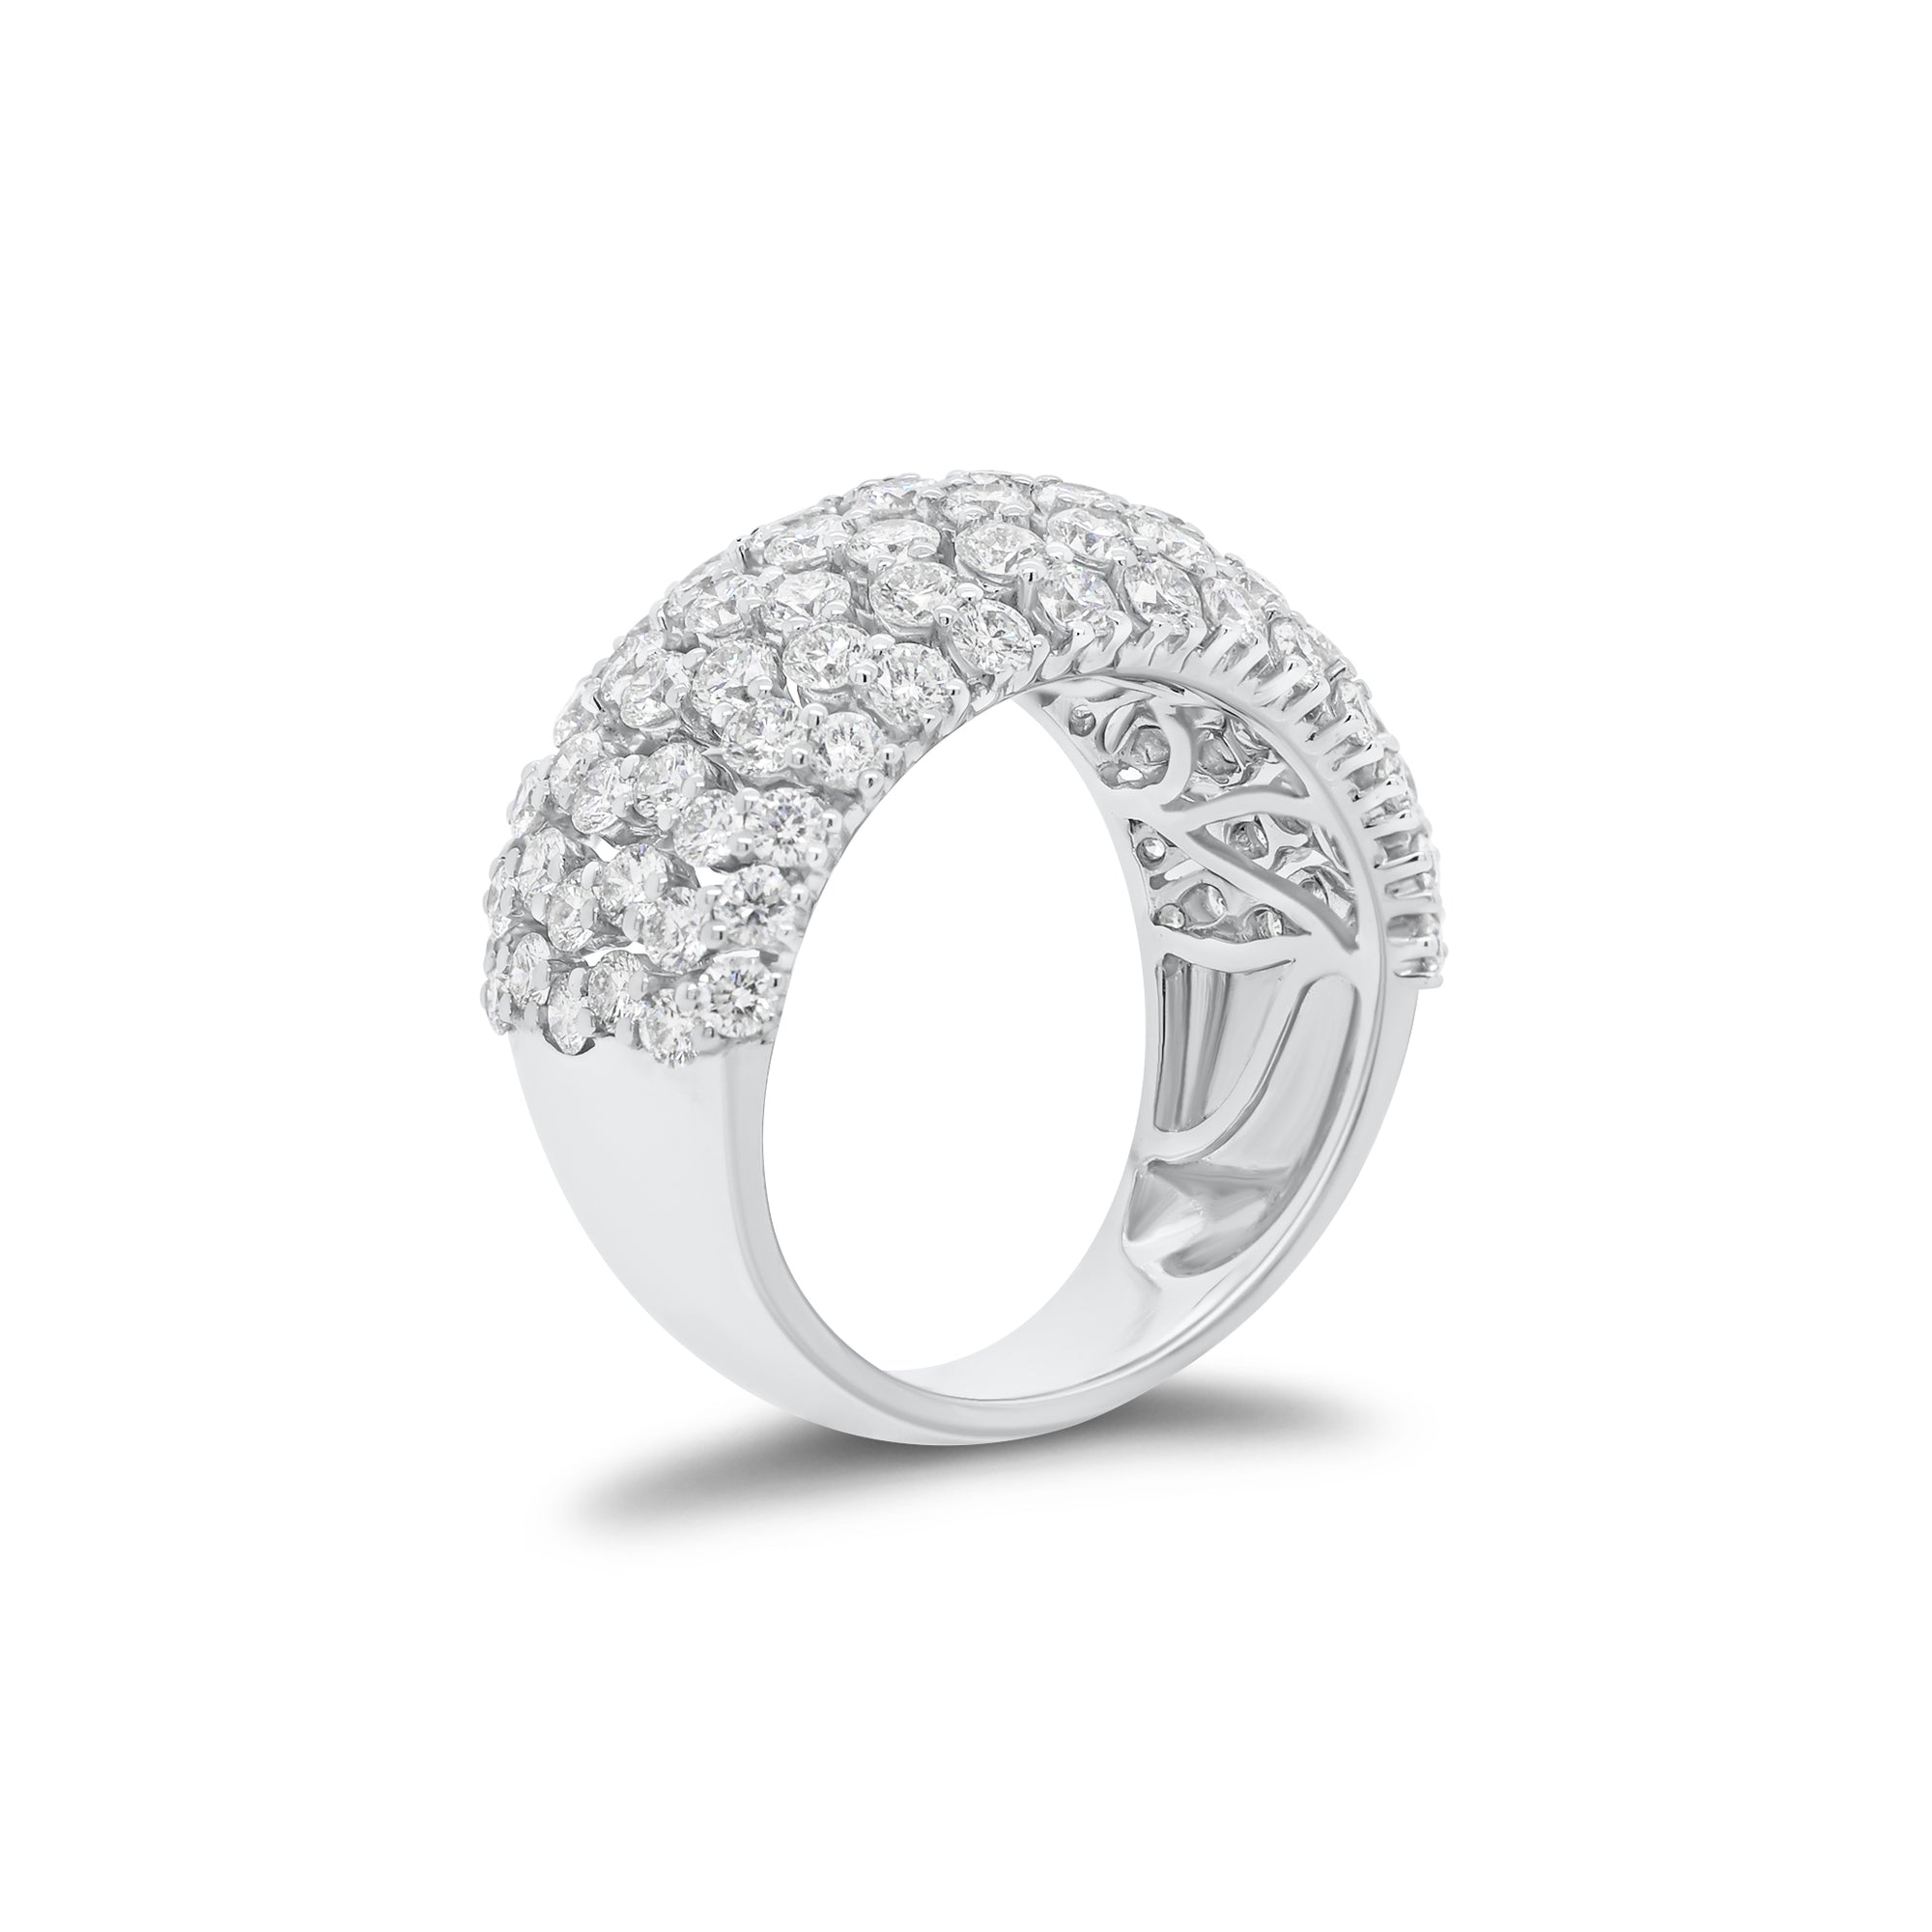 Diamond puffy fashion ring - 18K gold weighing 7.99 grams  - 98 round diamonds weighing 3.13 carats